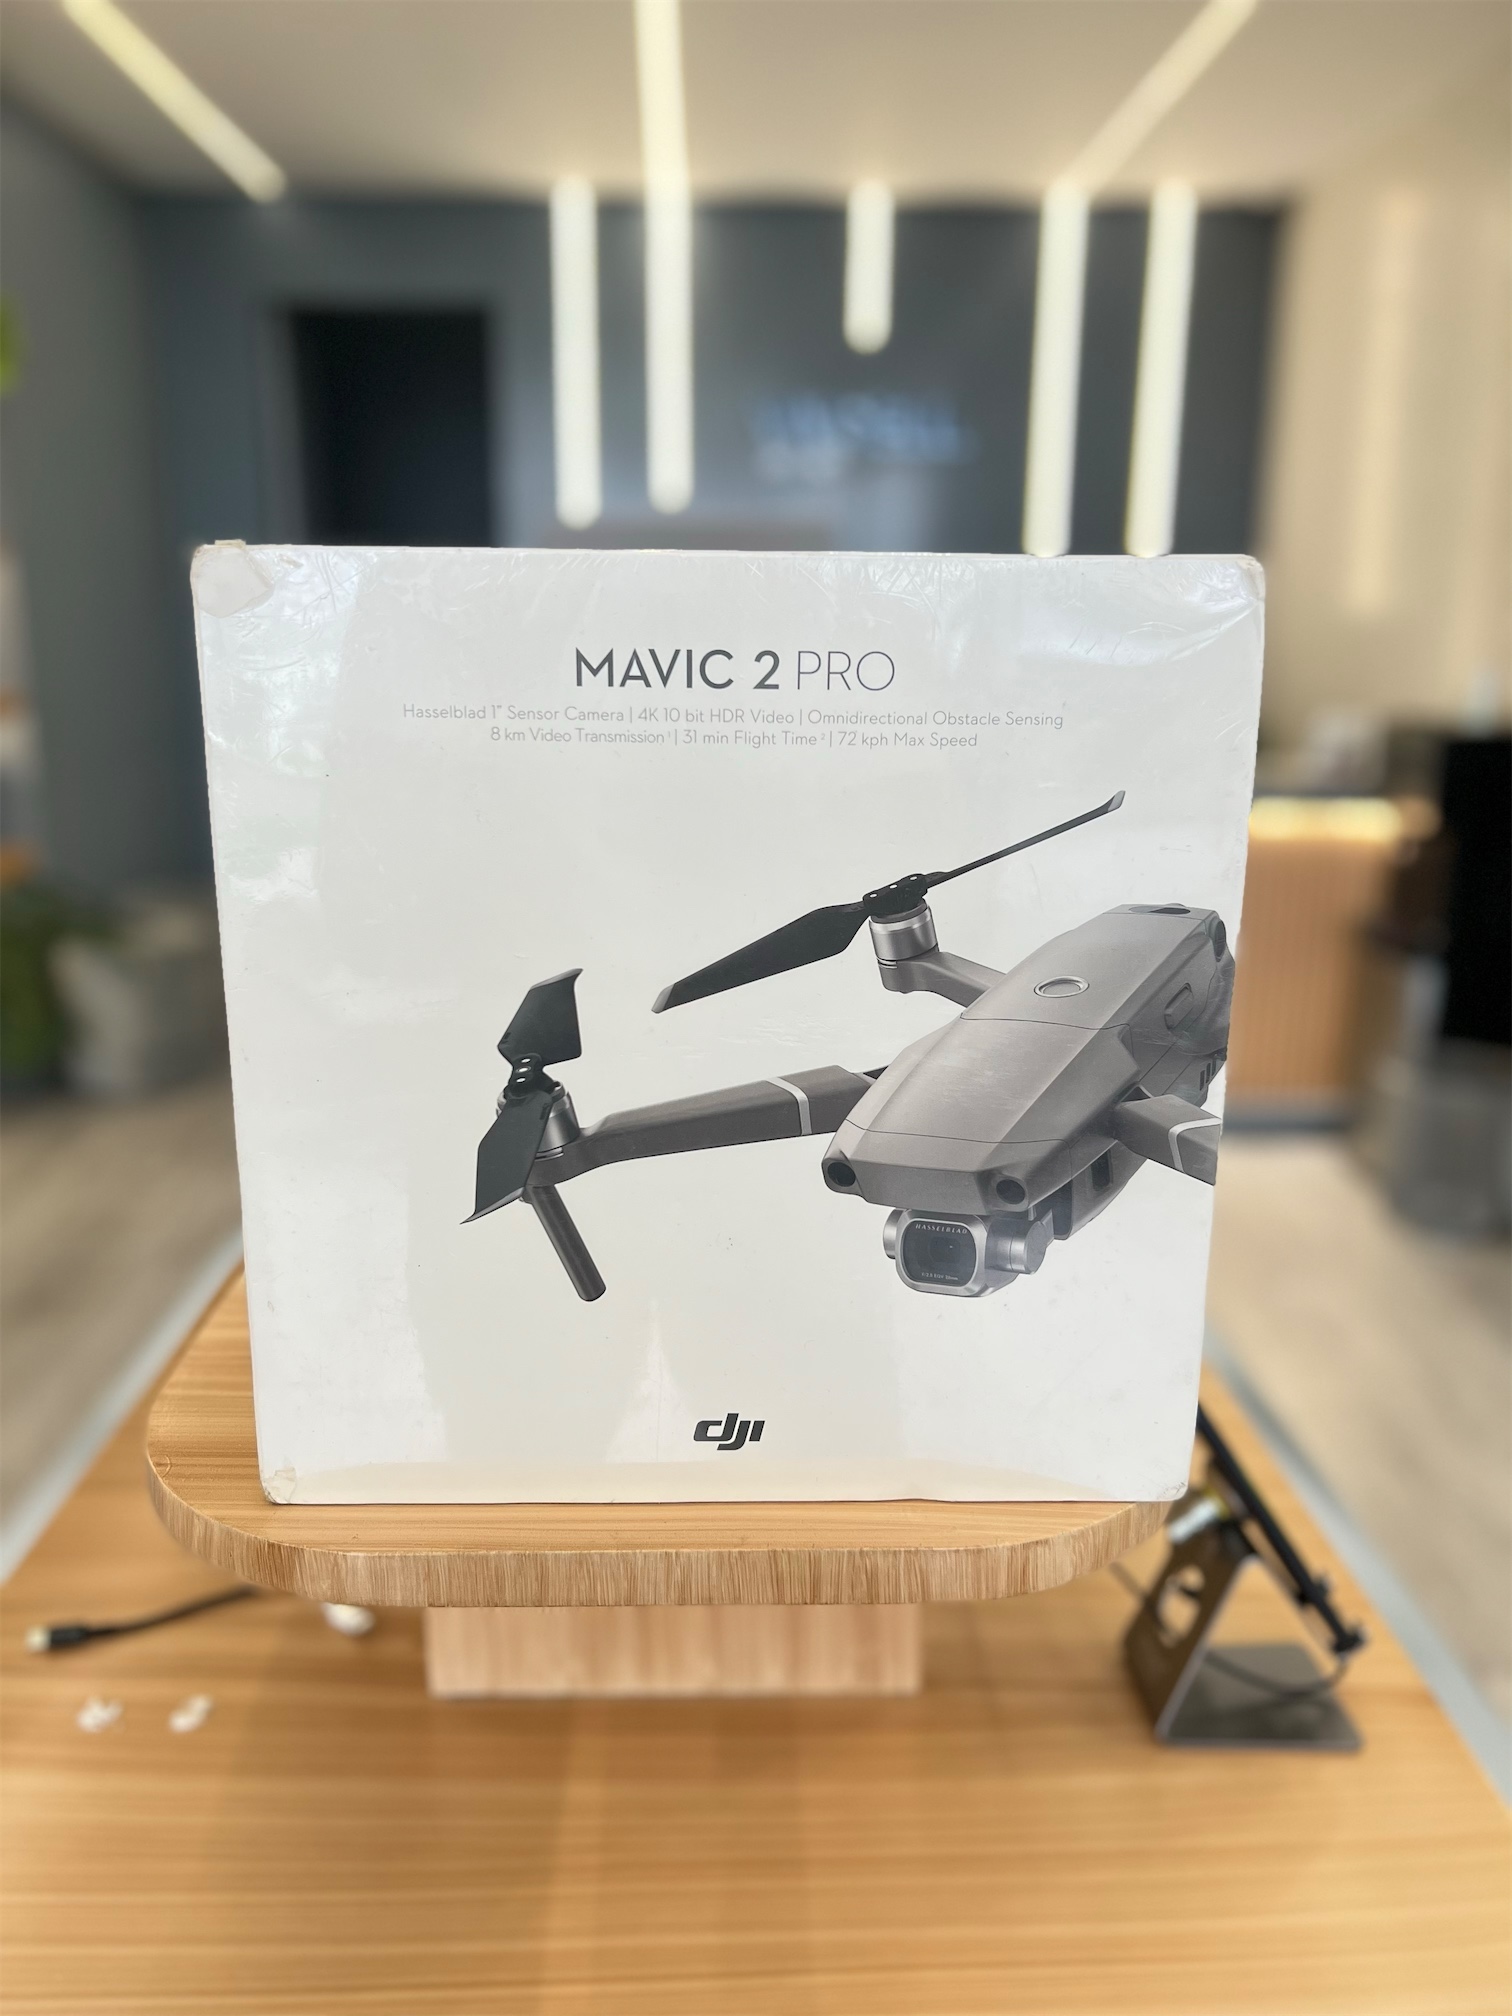 DRONE MAVIC 2 pro NUEVO SELLADO